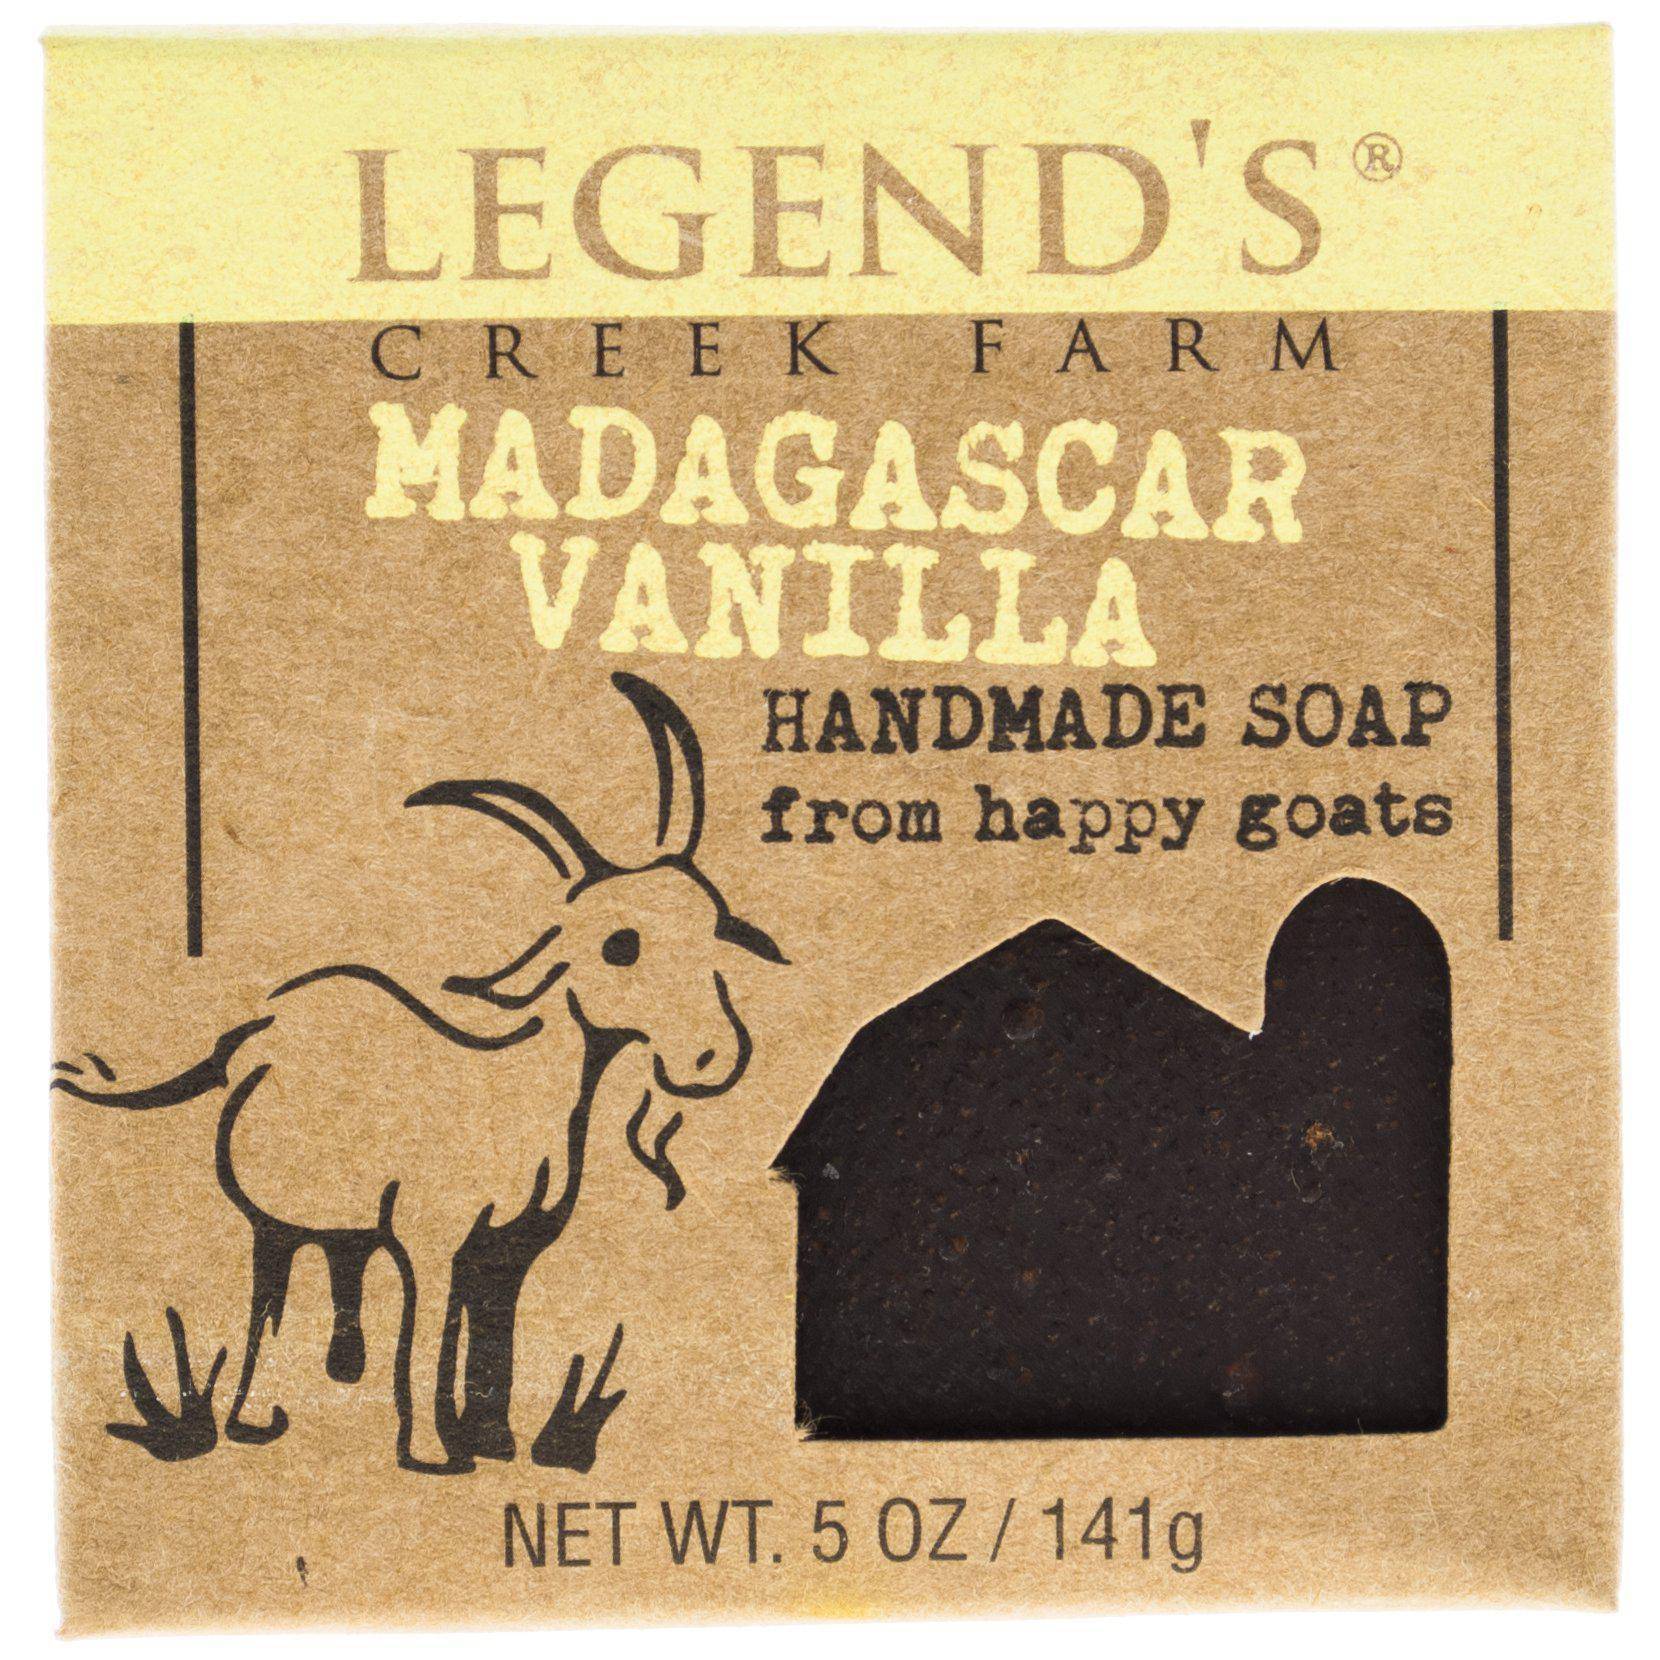 Vanilla Bean Goat Milk Hand Soap Bundle